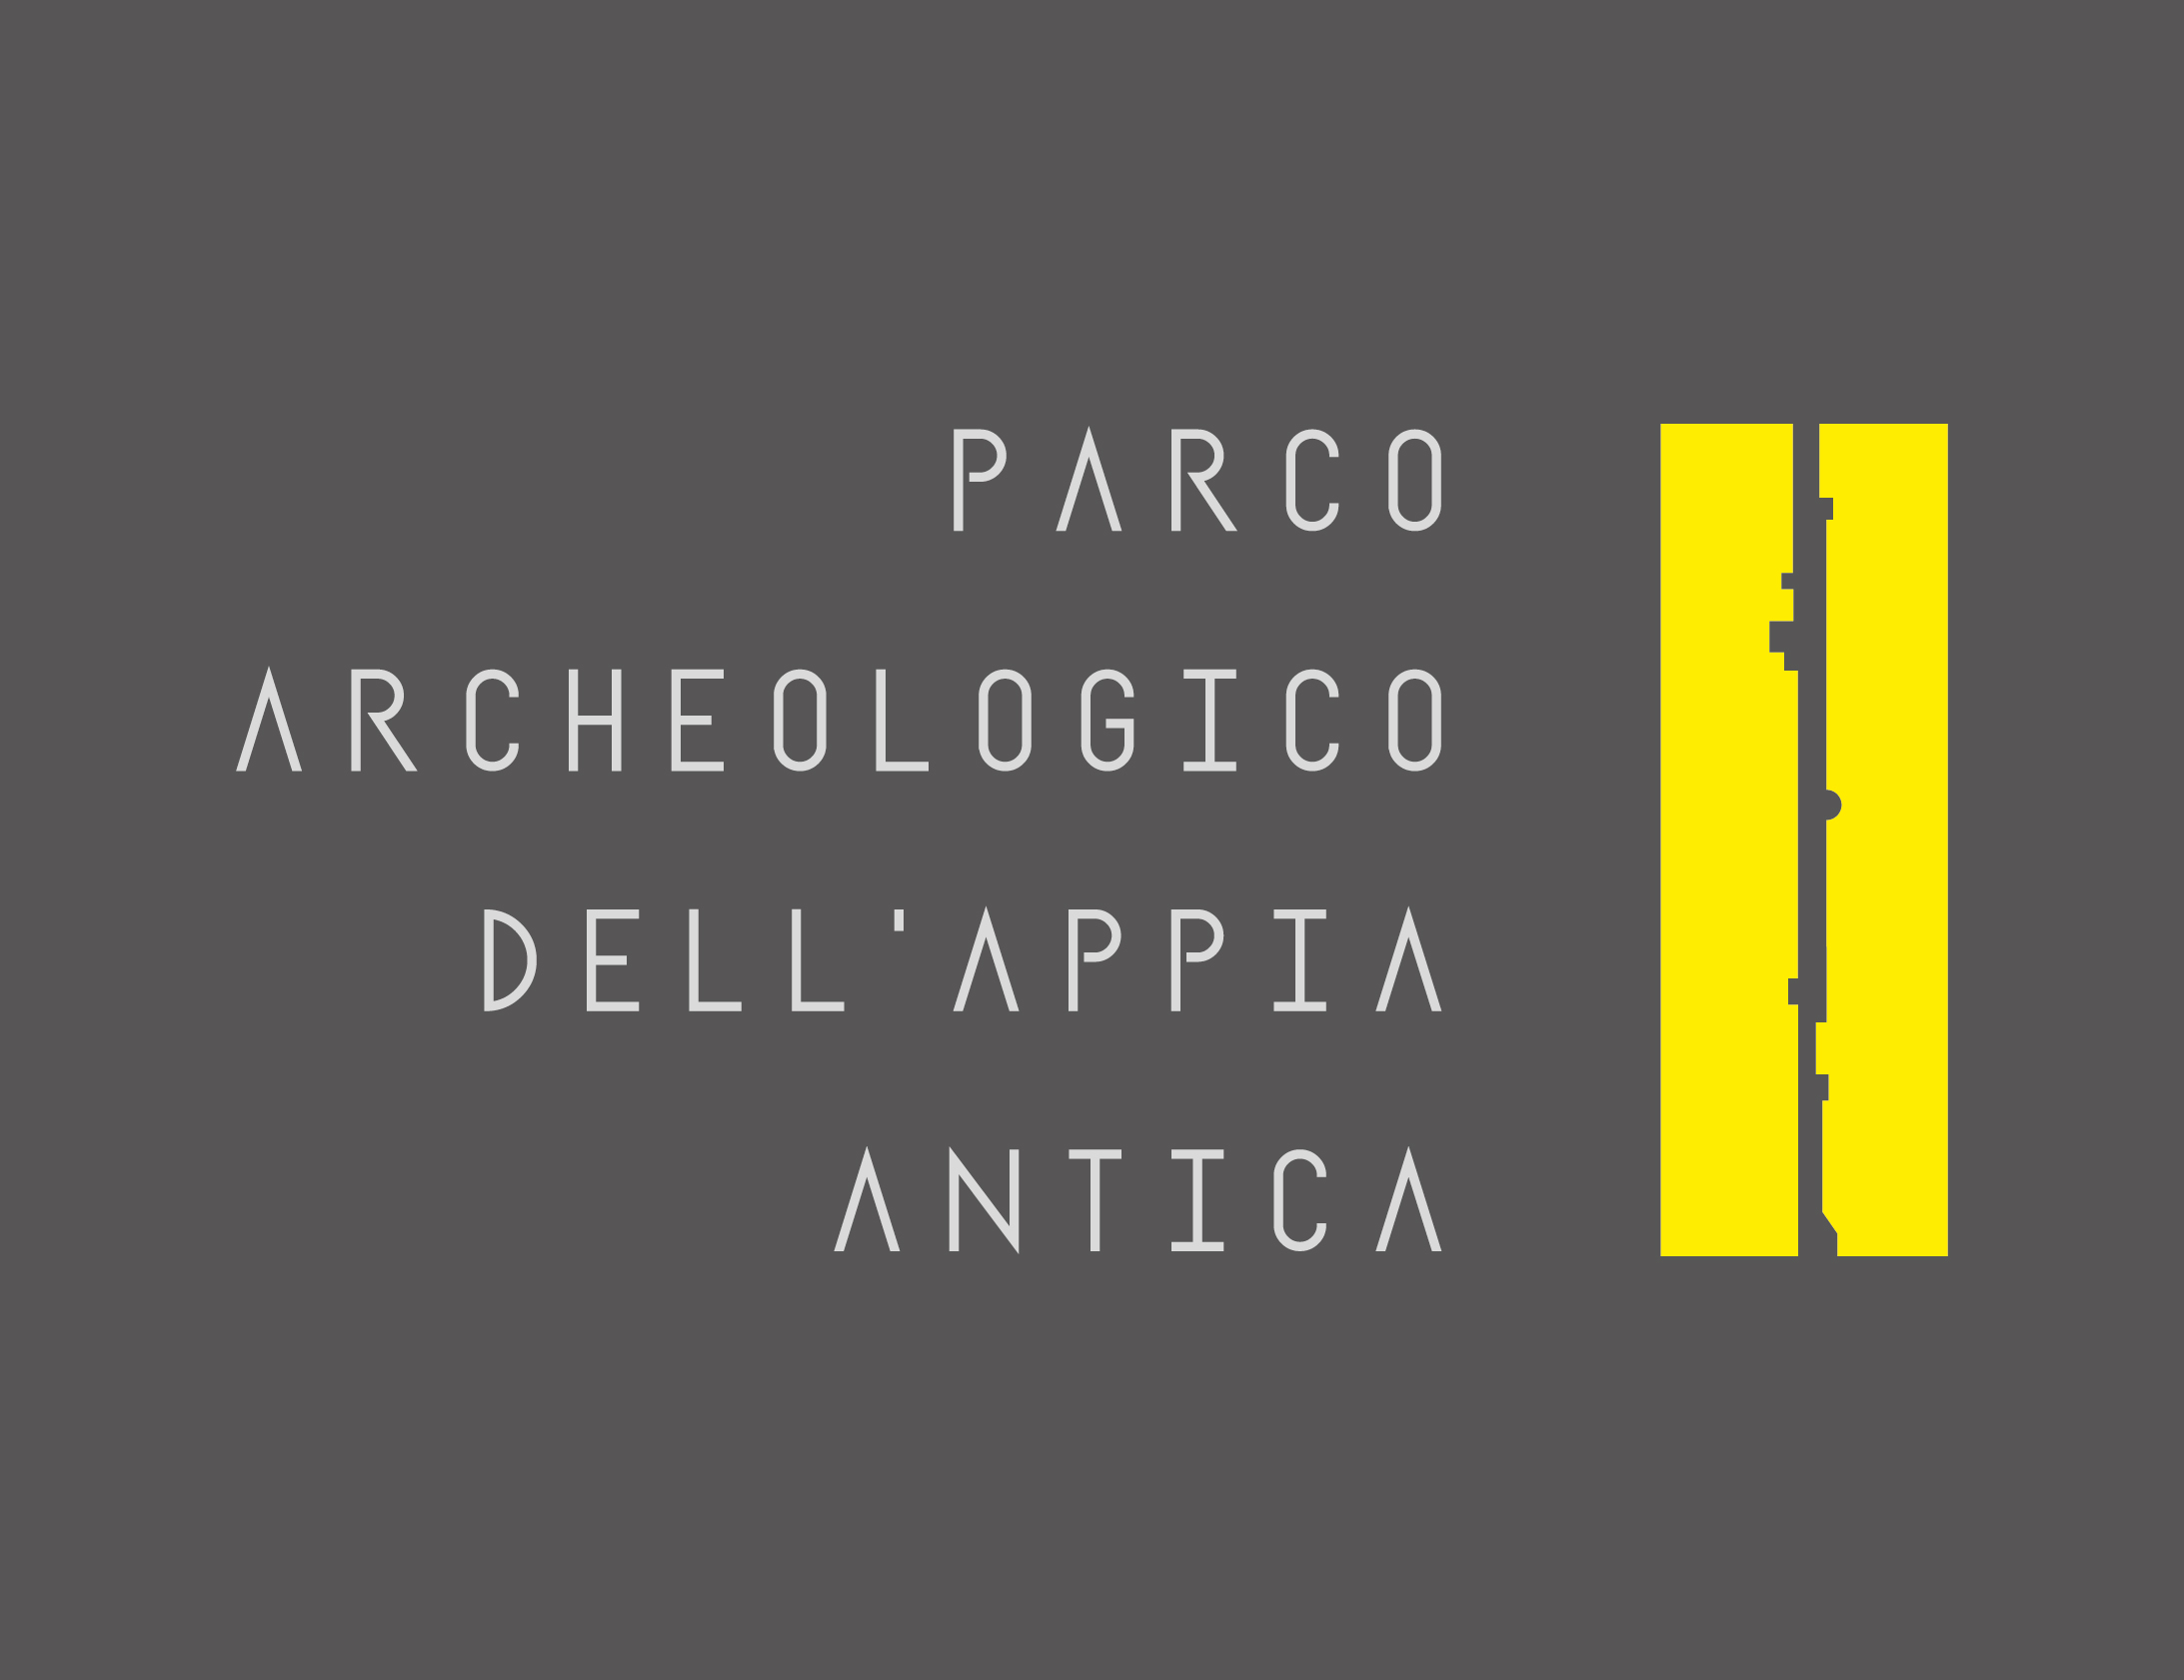 Parco Archeologico dell’Appia Antica